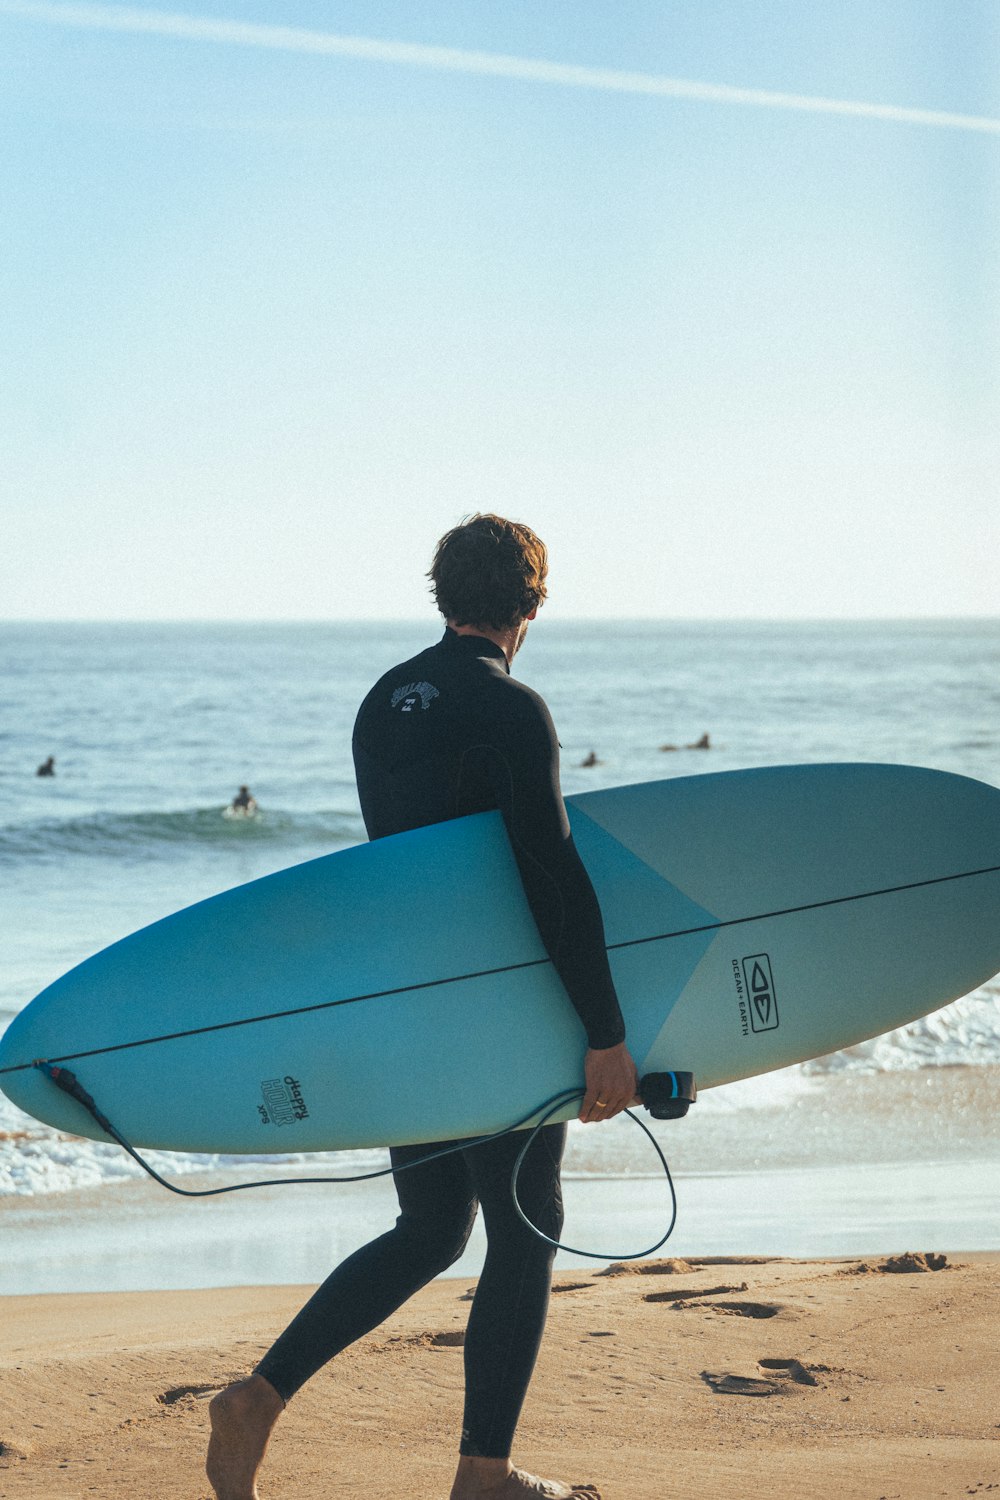 잠수복을 입은 남자가 해변에서 서핑 보드를 들고 있습니다